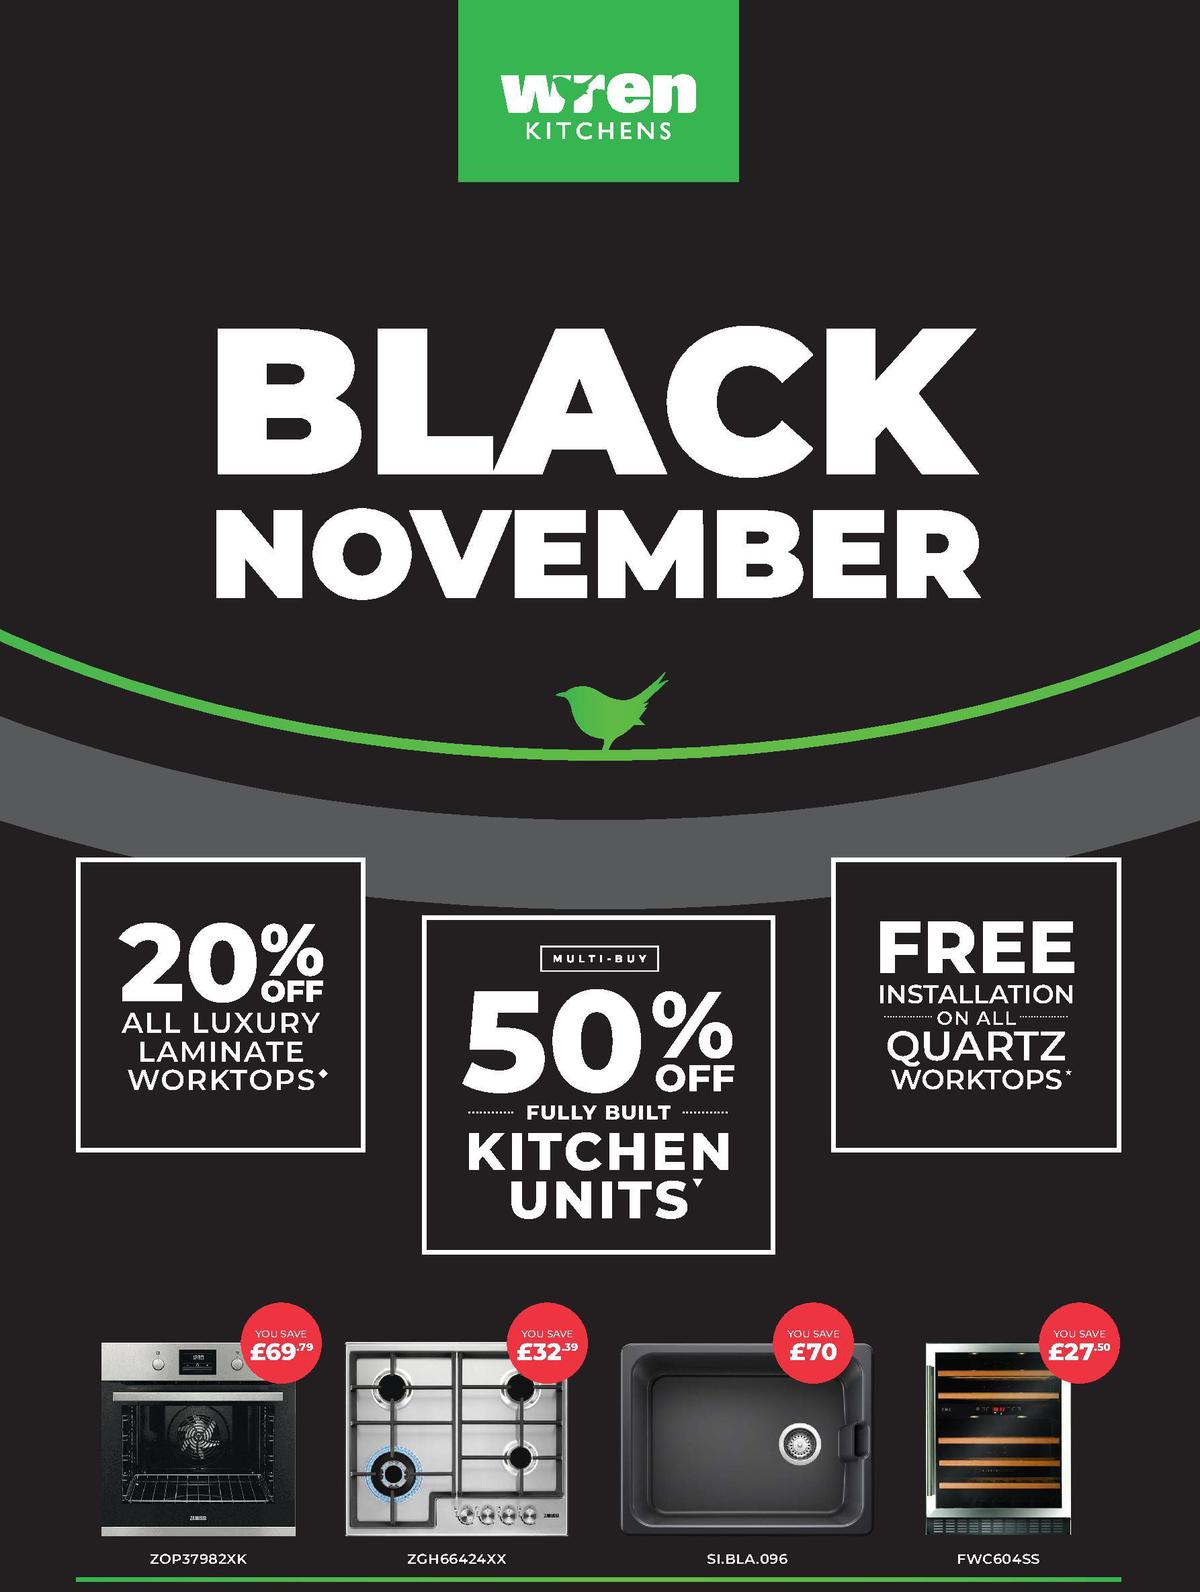 Wren Kitchens Black November Offers from 7 November